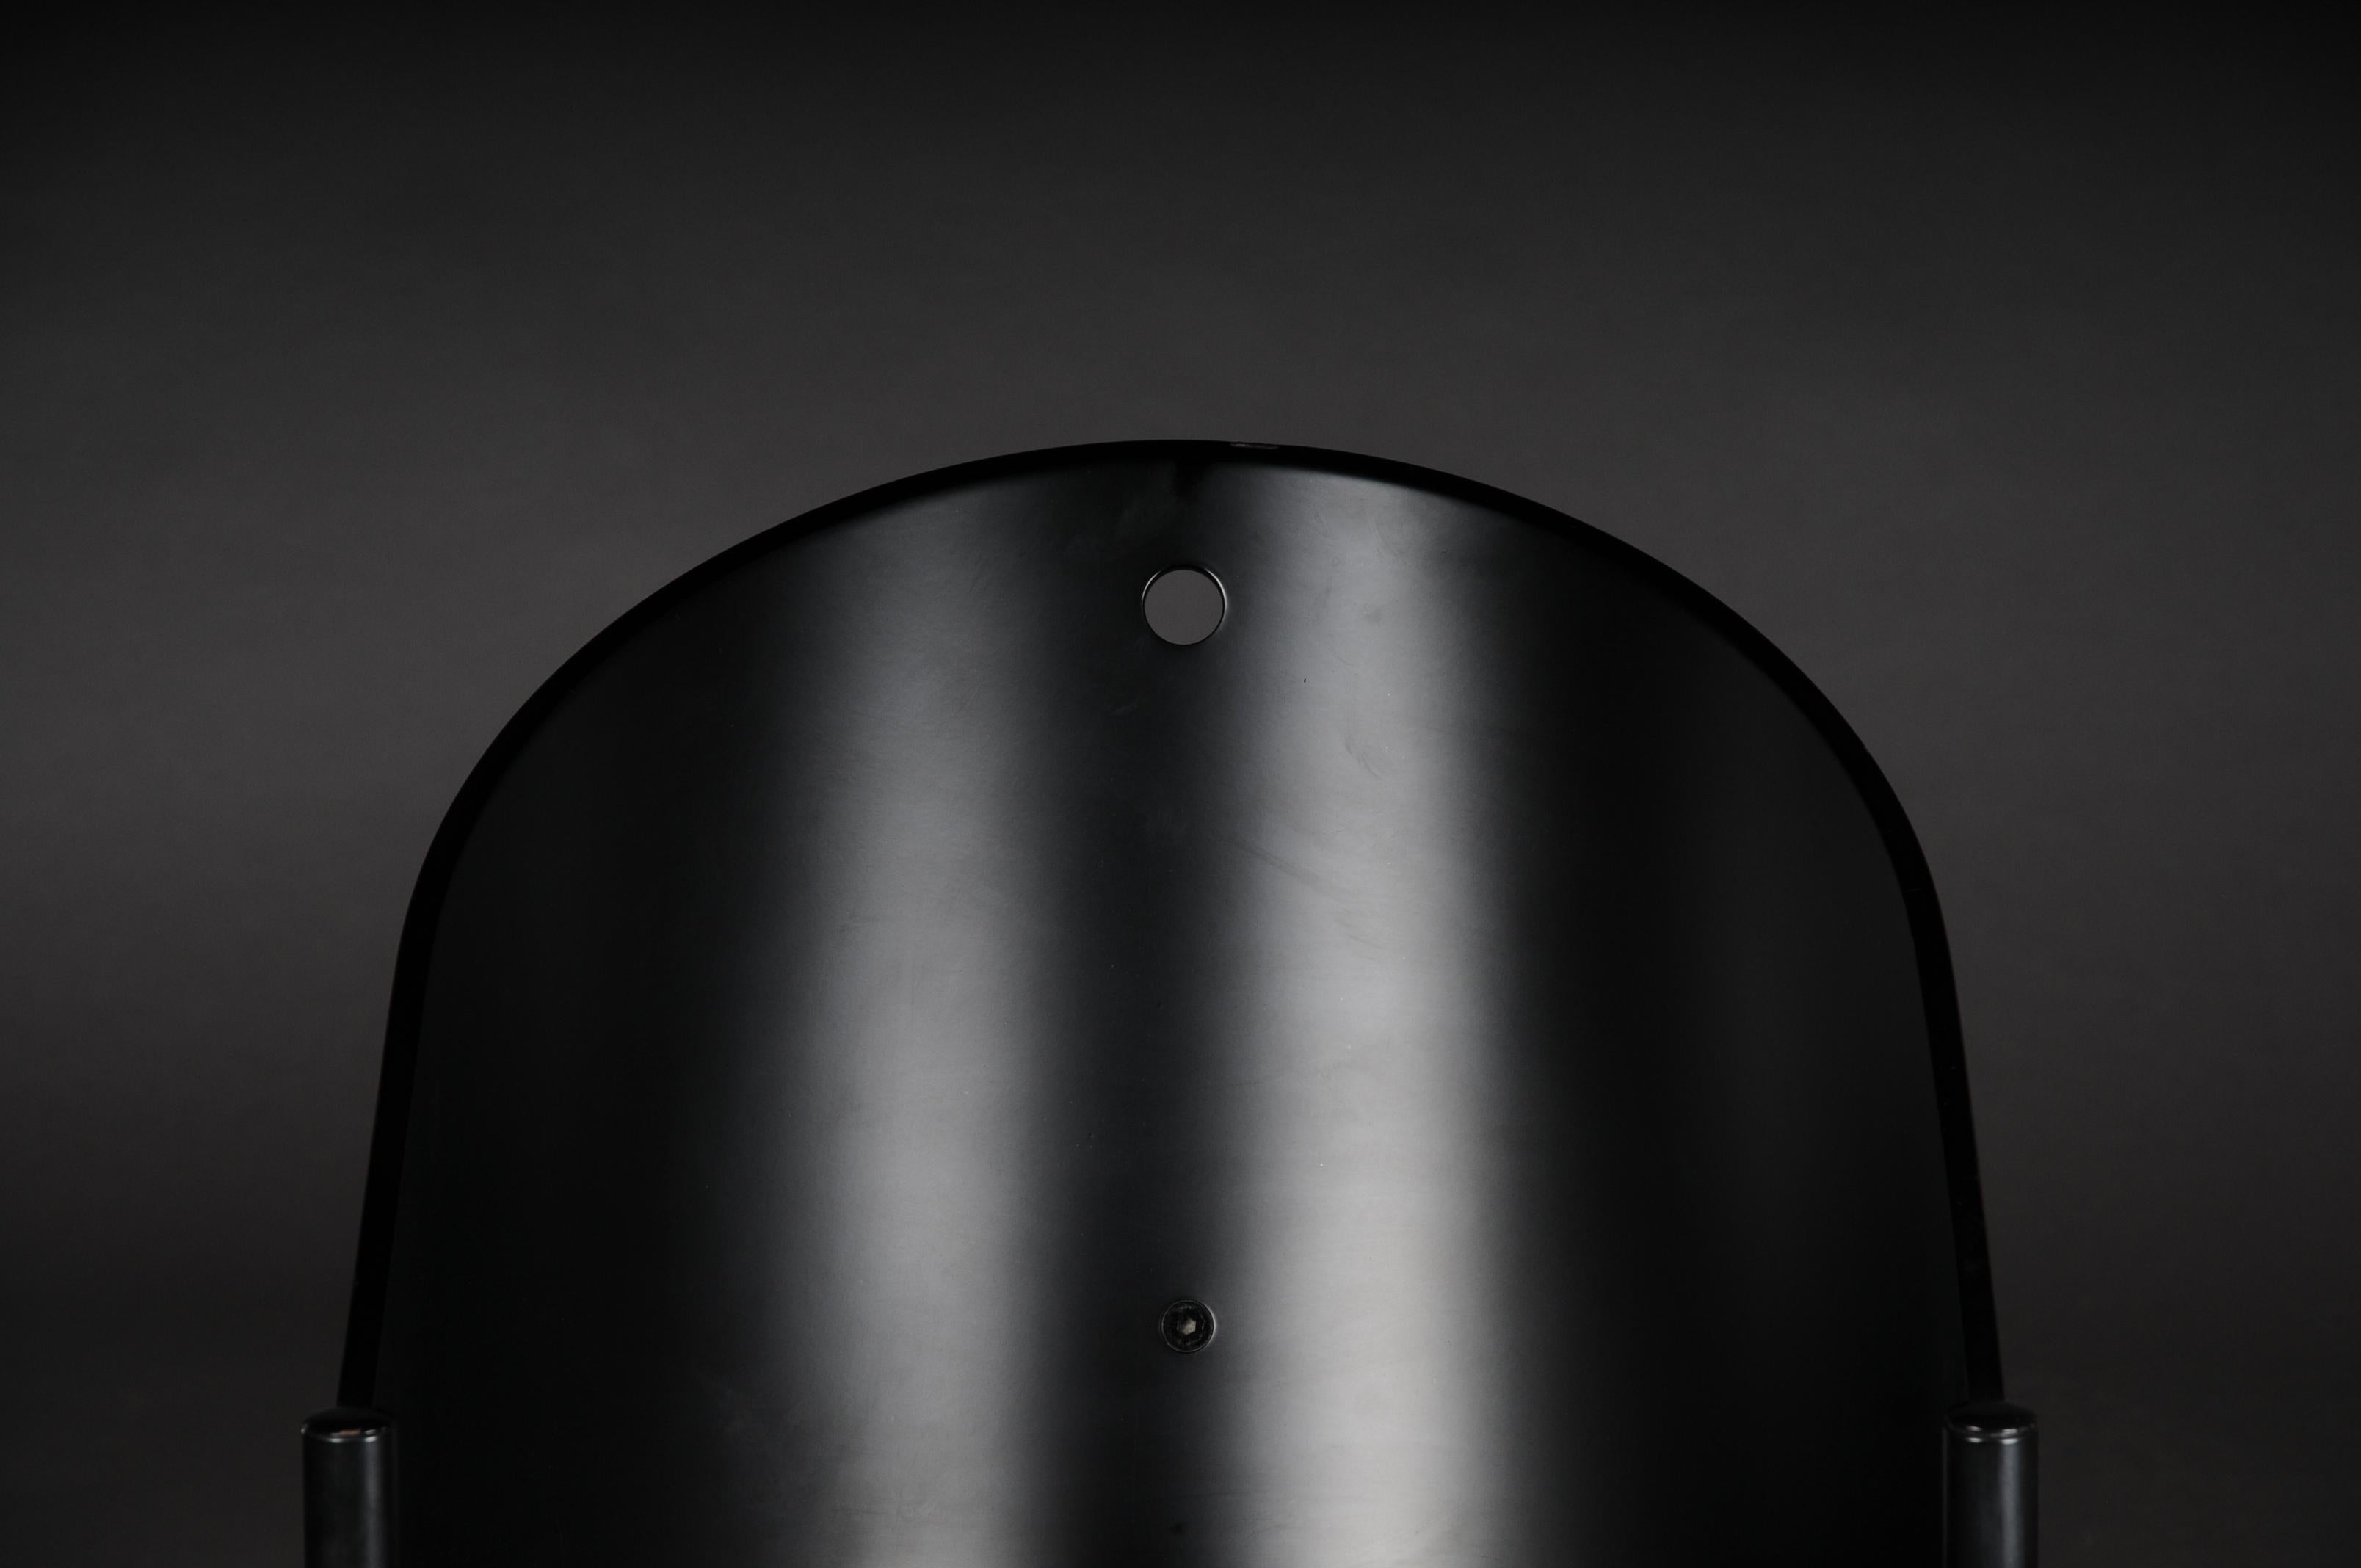 Designer-Sessel Philippe Strack, schwarz.

Schwarzer Sessel oder Sessel Modell Pratfall entworfen von Philippe Starck.
Bitte beachten Sie die detaillierten Fotos für den Zustand.

(C-169).